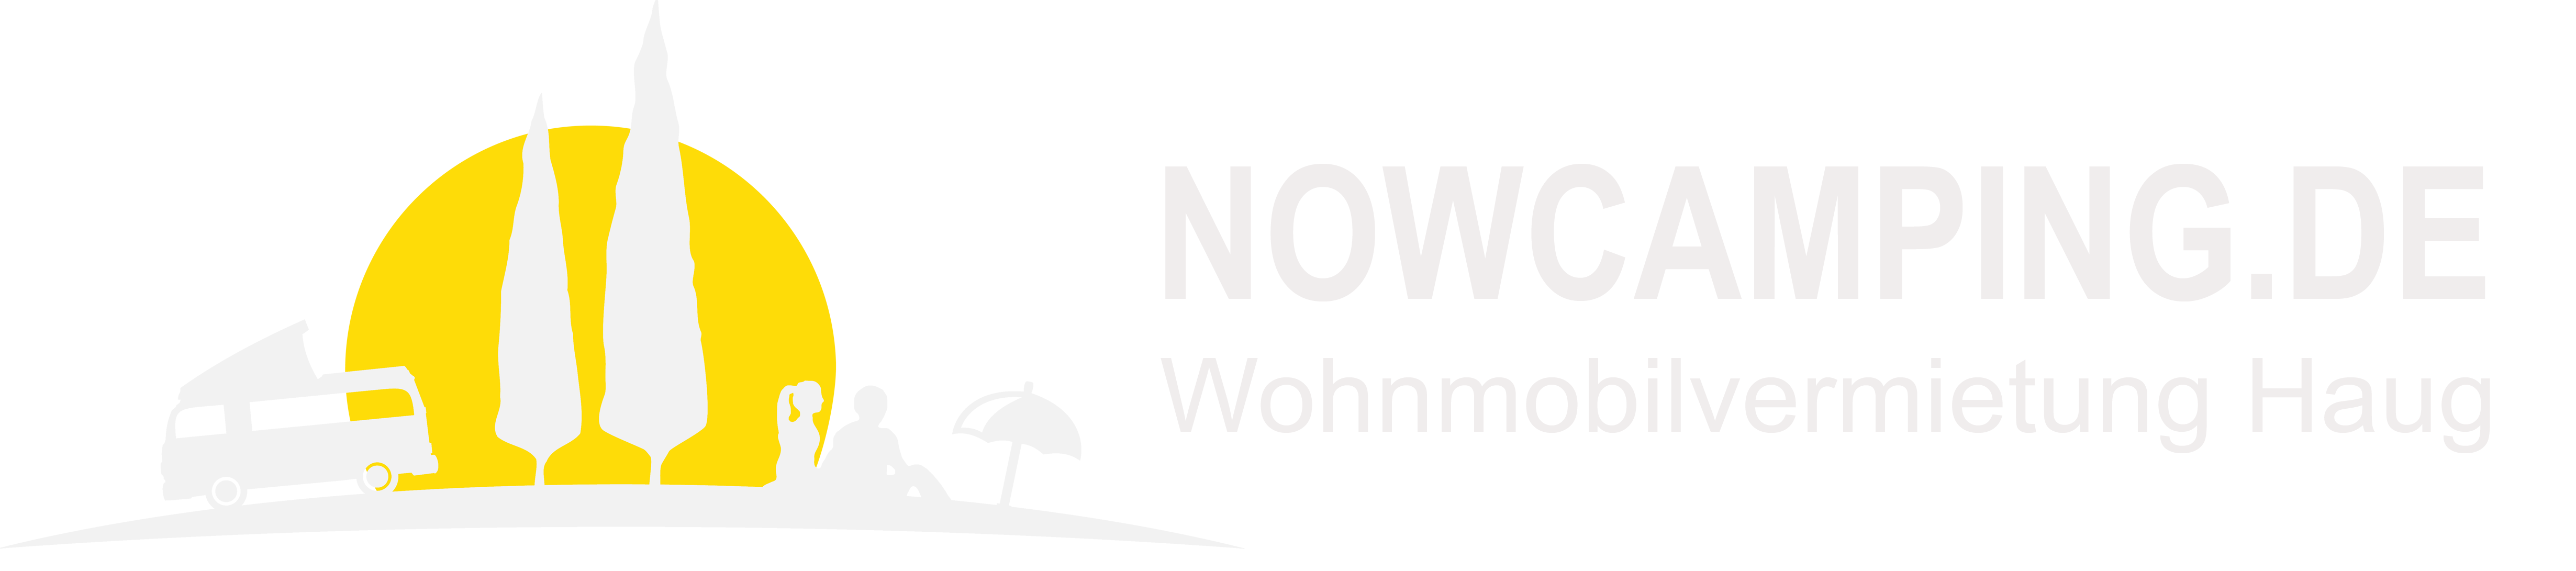 Haug Wohnmobilvermietung - Wohnmobil mieten in München und Dachau Logo